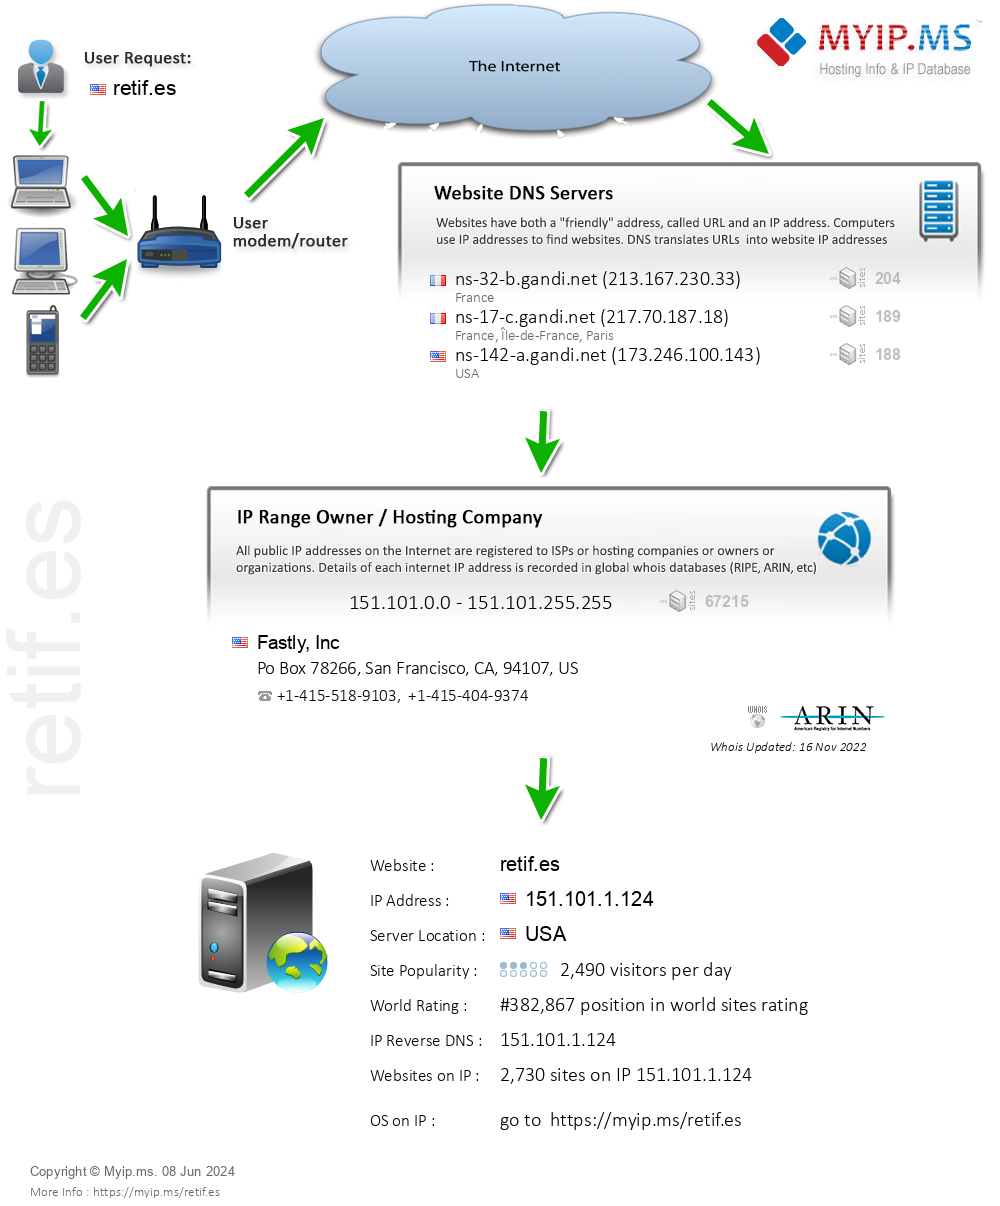 Retif.es - Website Hosting Visual IP Diagram